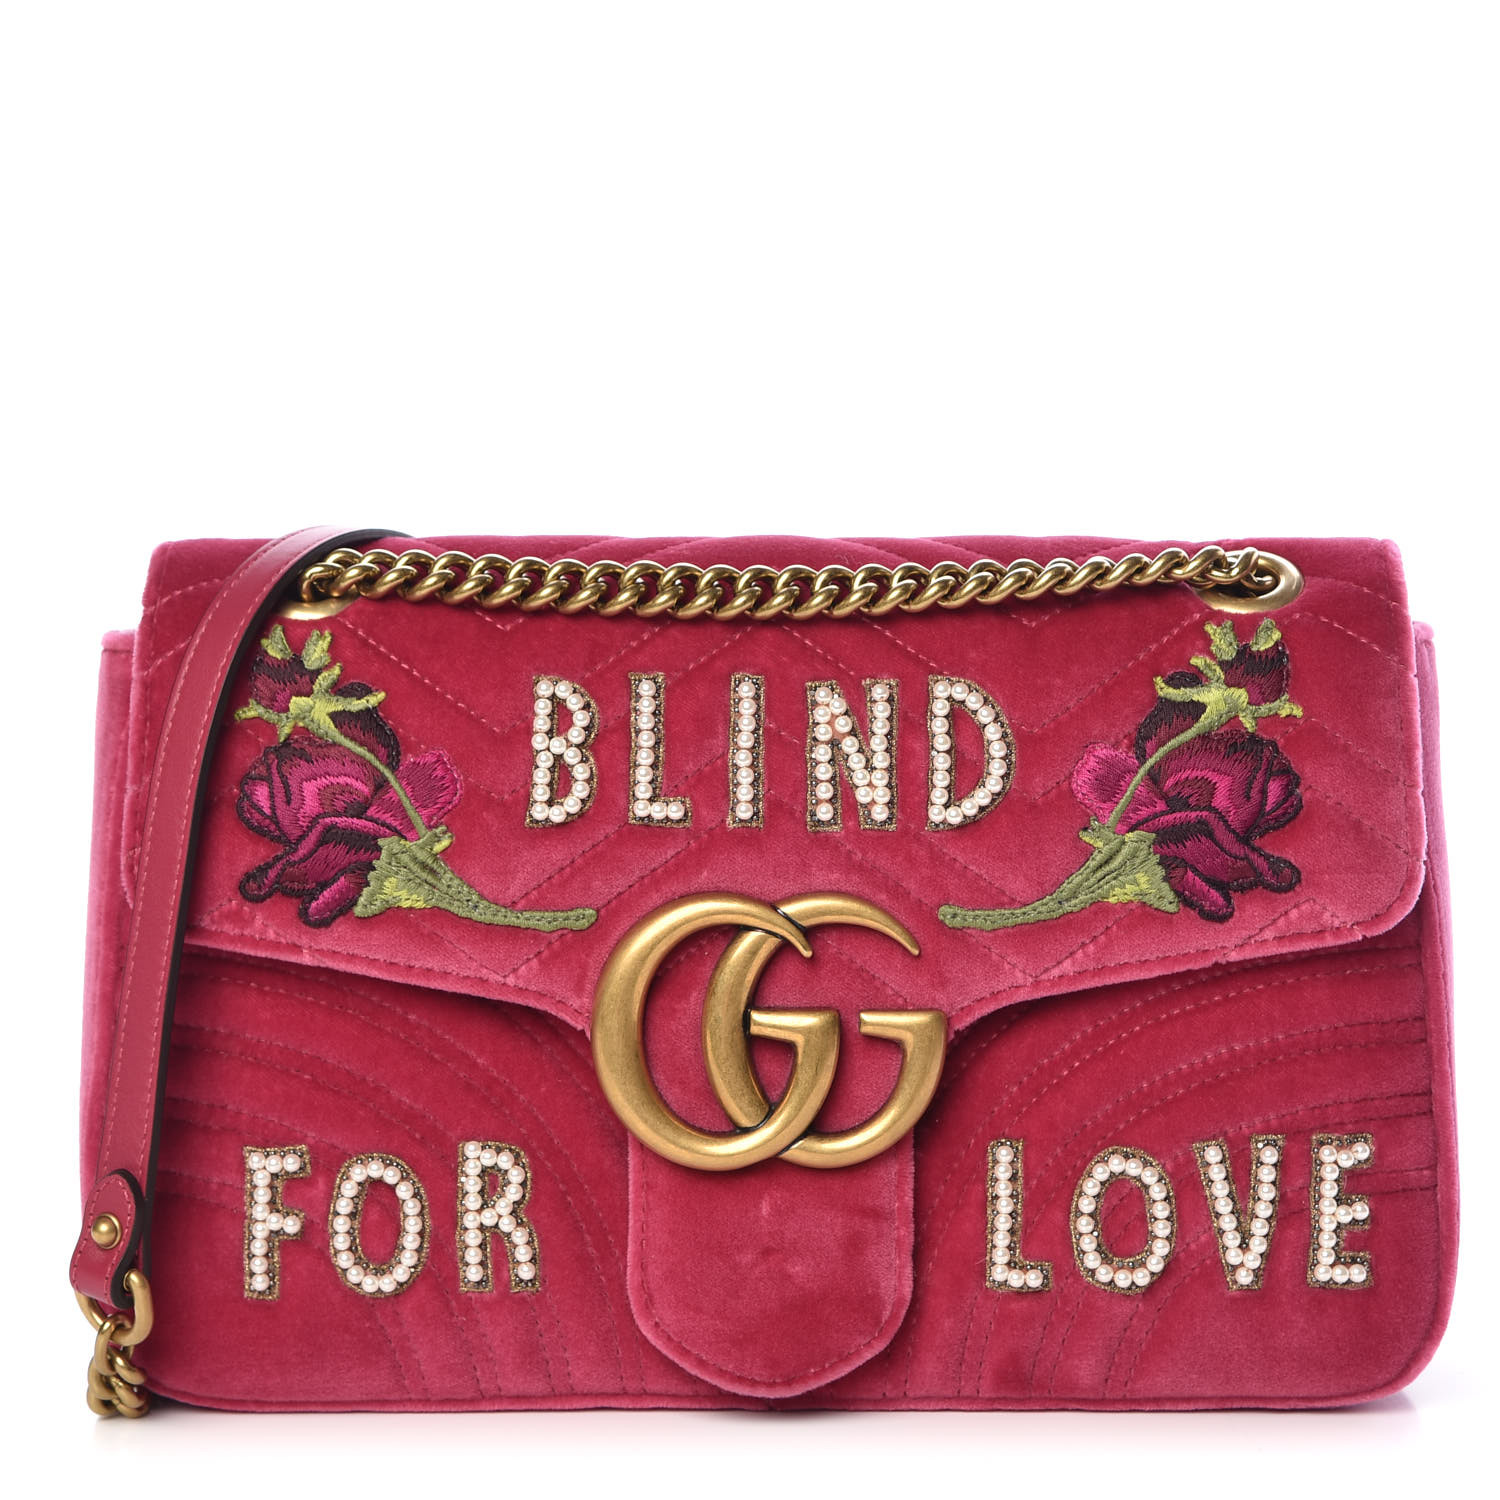 GUCCI Velvet Embroidered Medium Blind For Love Marmont Shoulder Bag Pink 380670